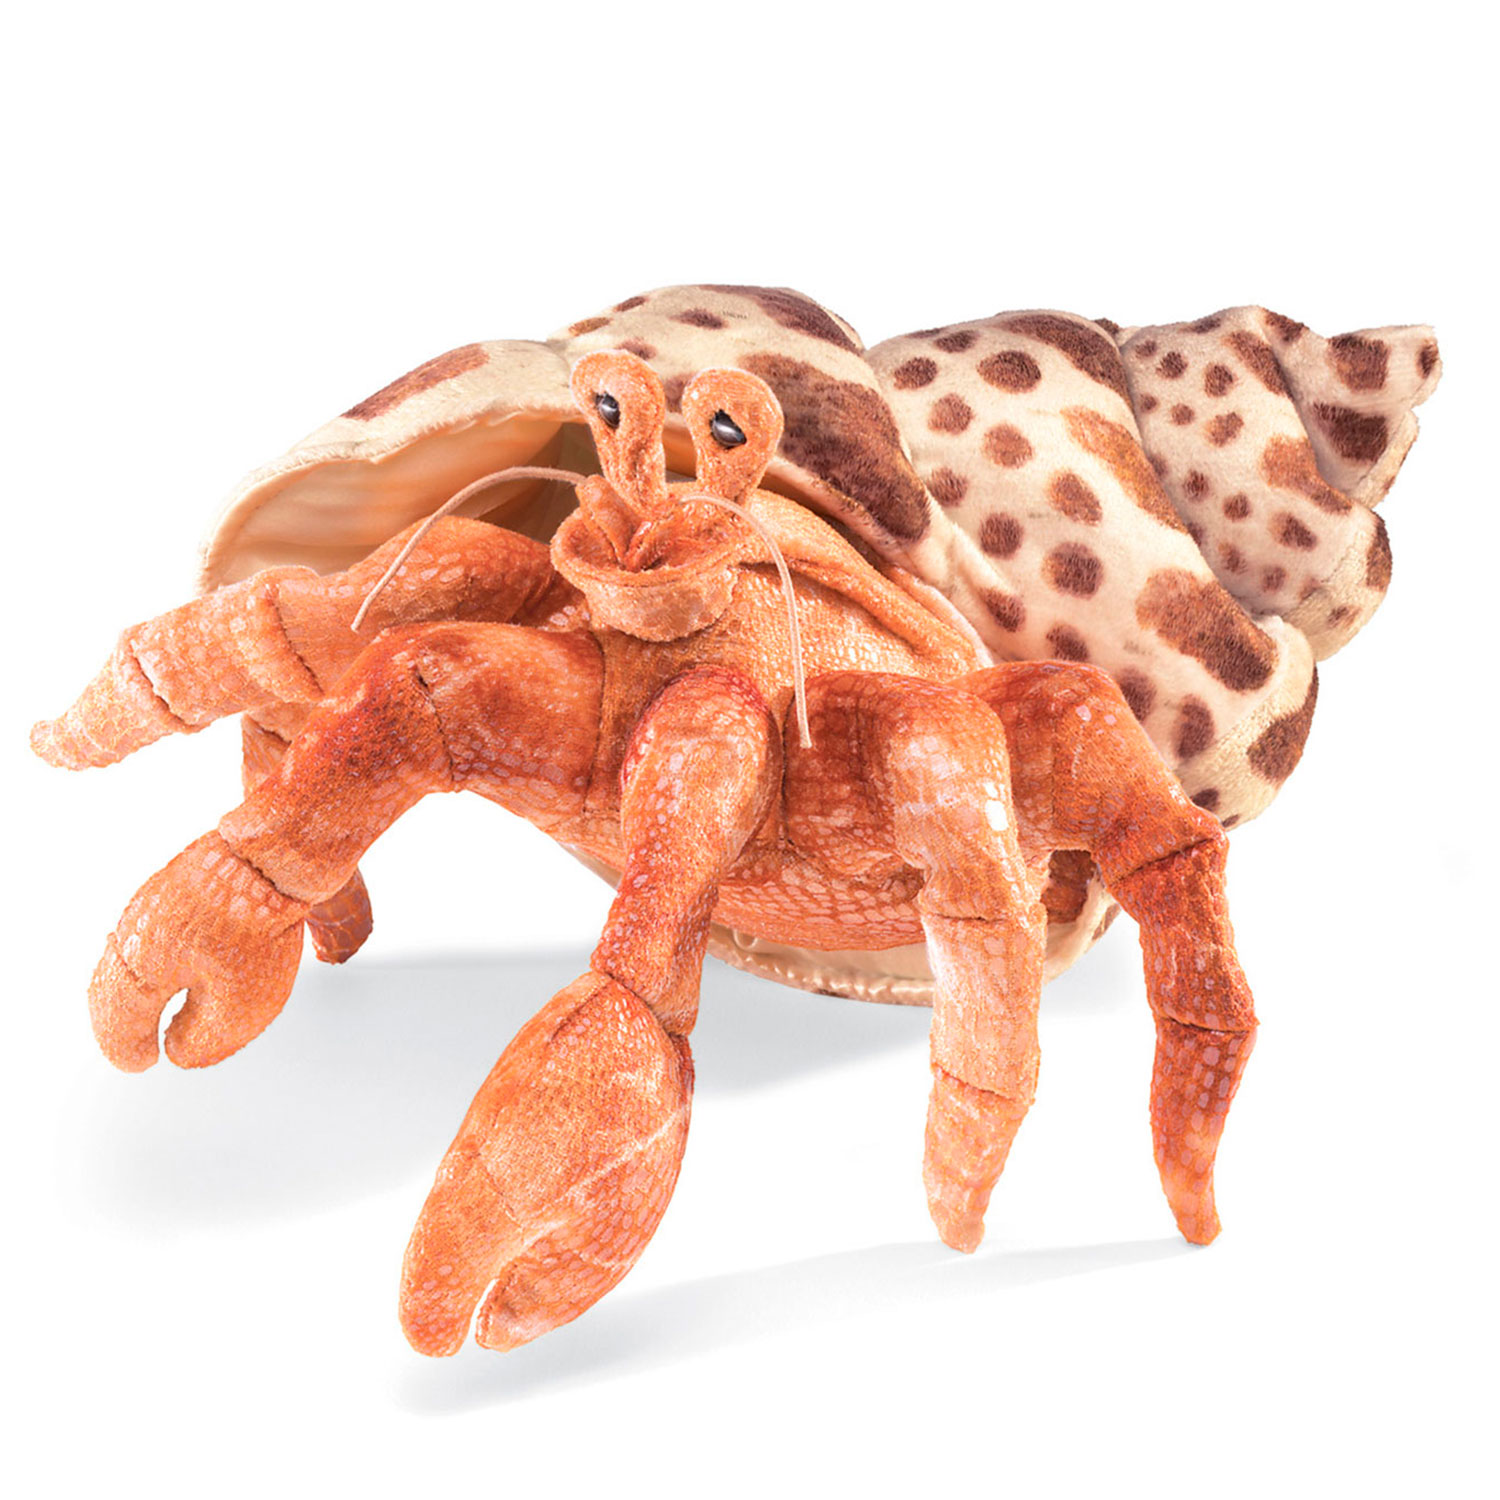 Einsiedlerkrebs / Hermit Crab